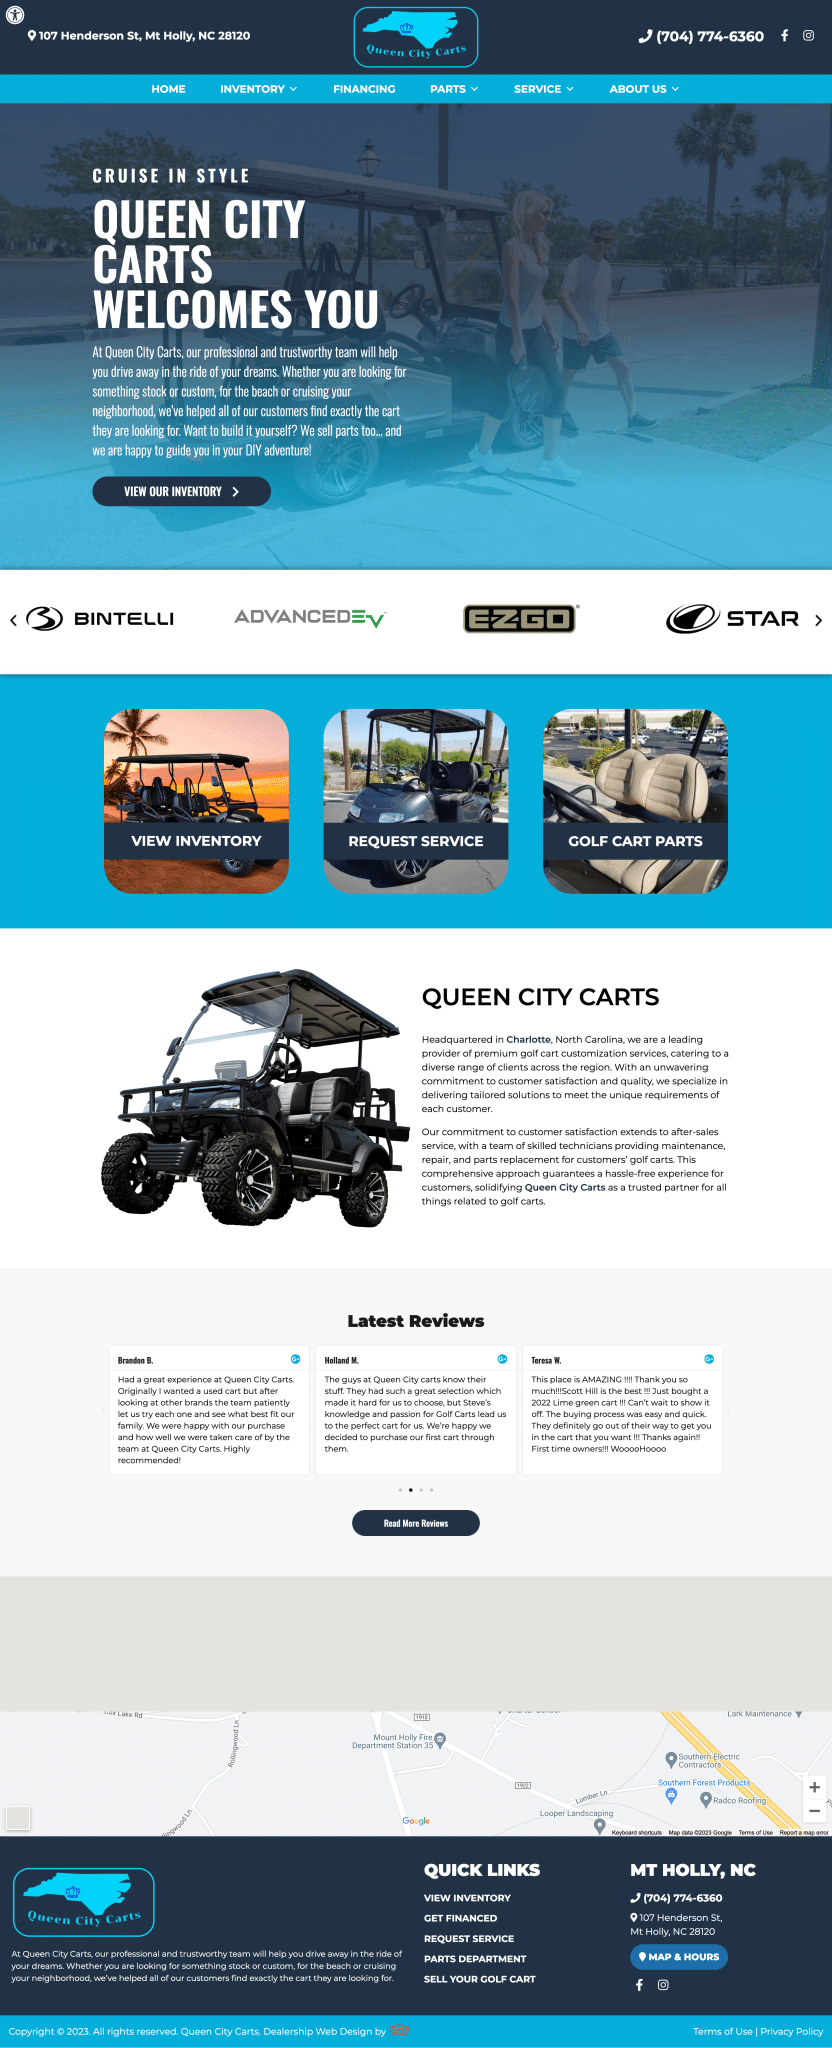 queen city carts